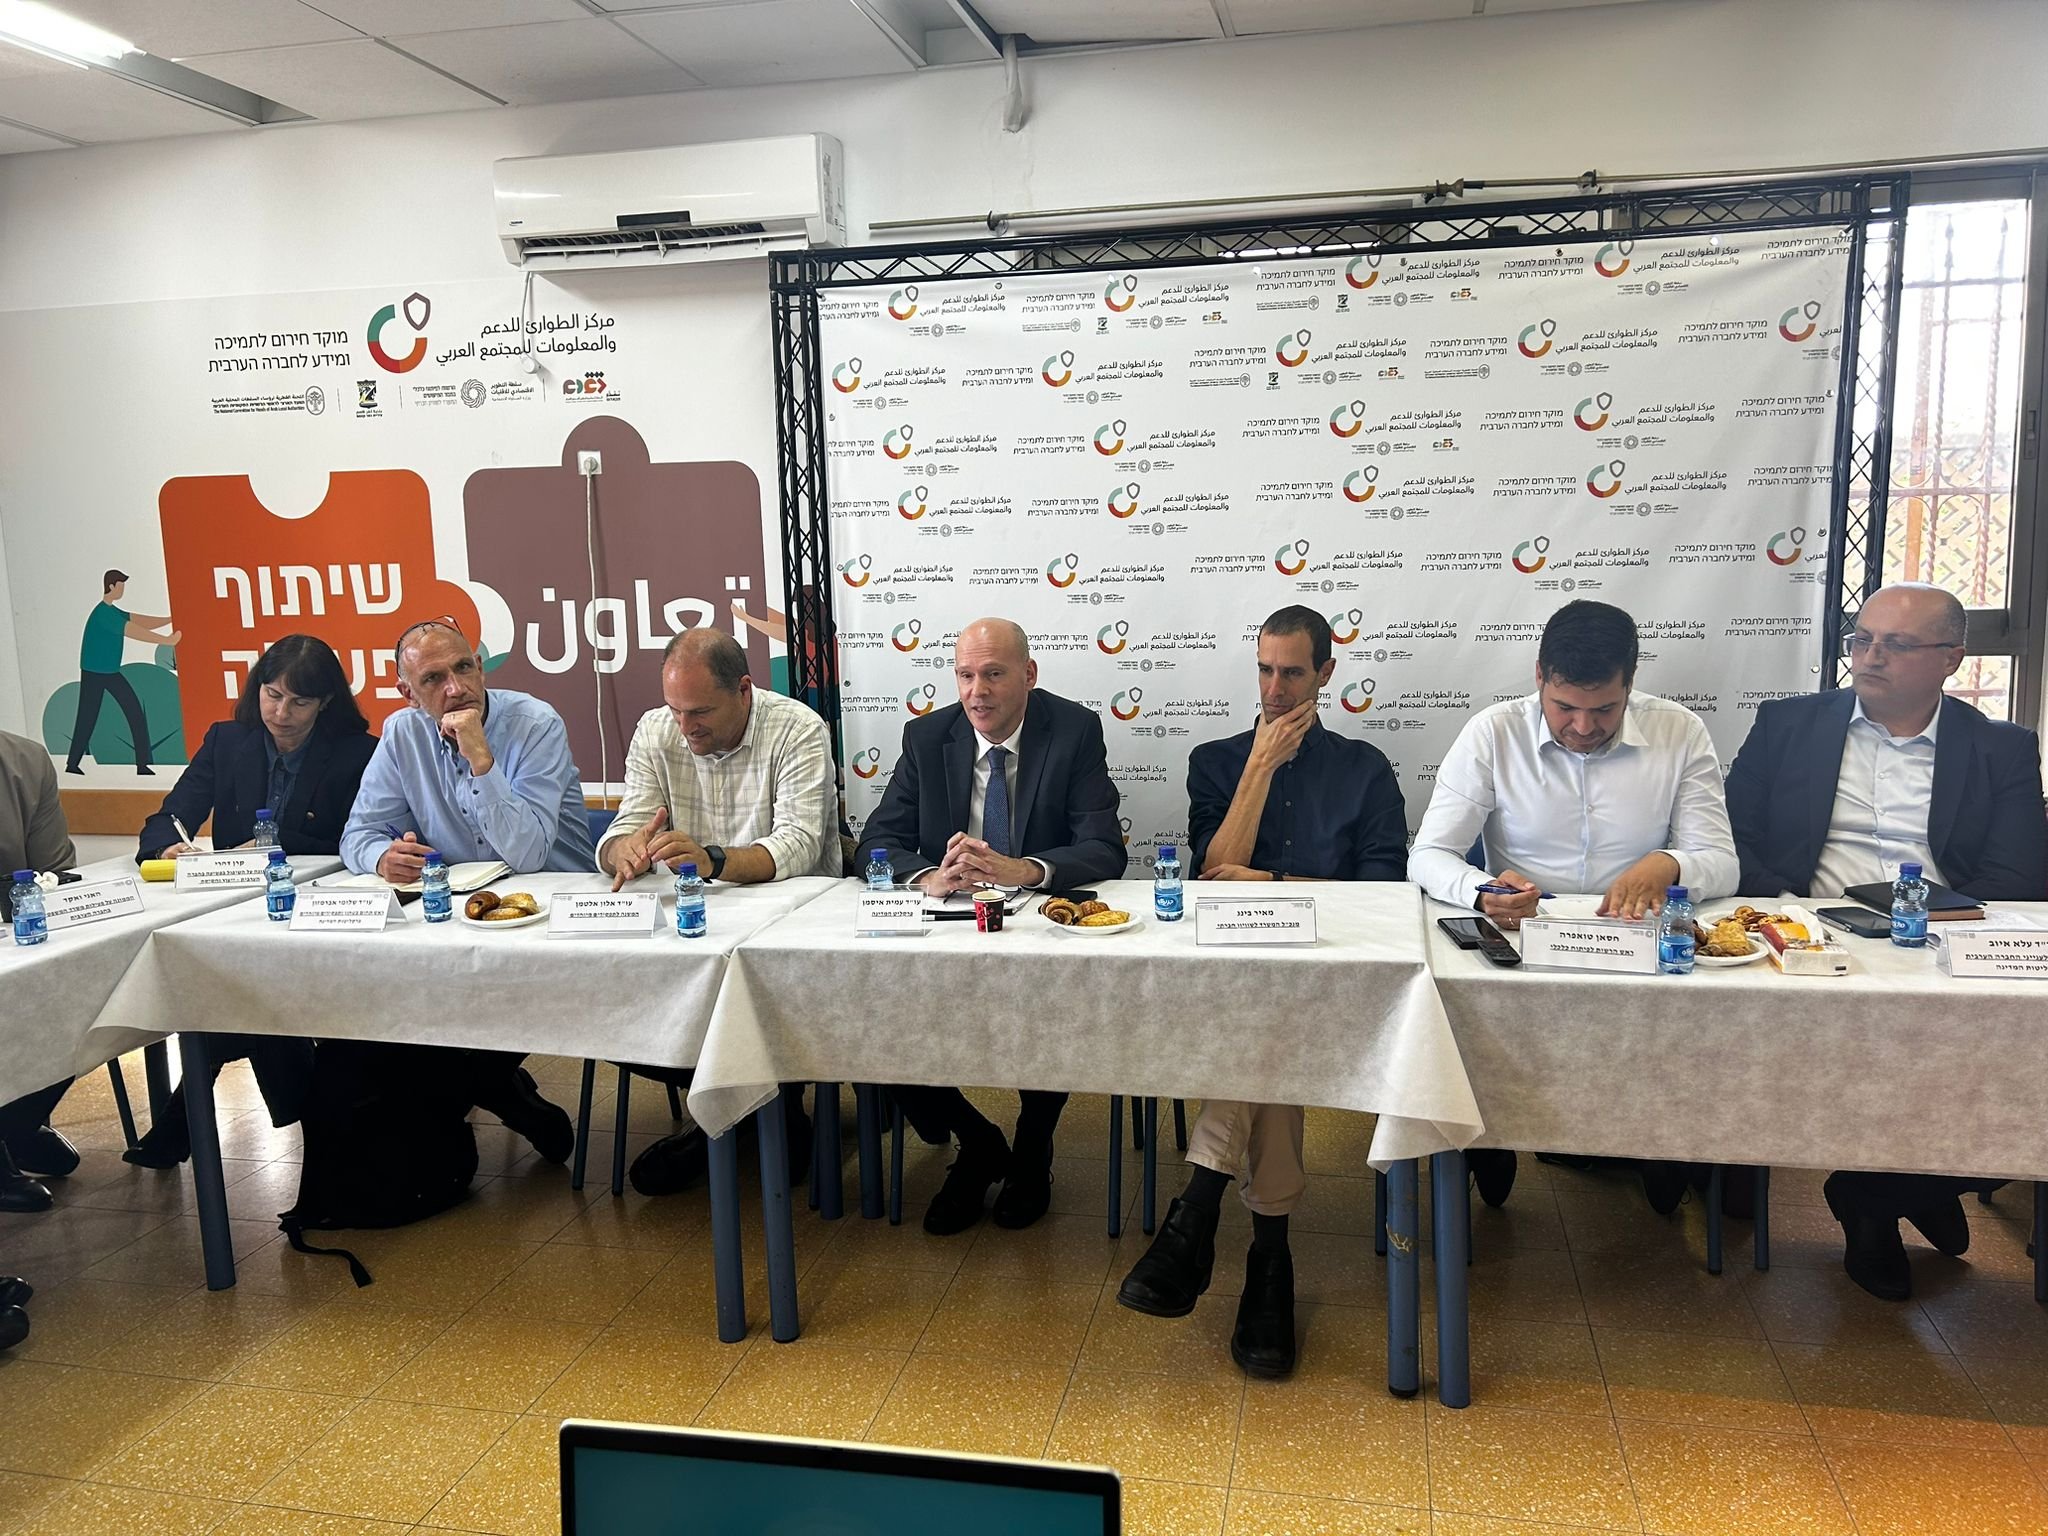 النائب العام عميت ايسمان يلتقي مع ممثلين عن المجتمع العربي، رؤساء سلطات محلية وجمعيات وأكاديميين-1